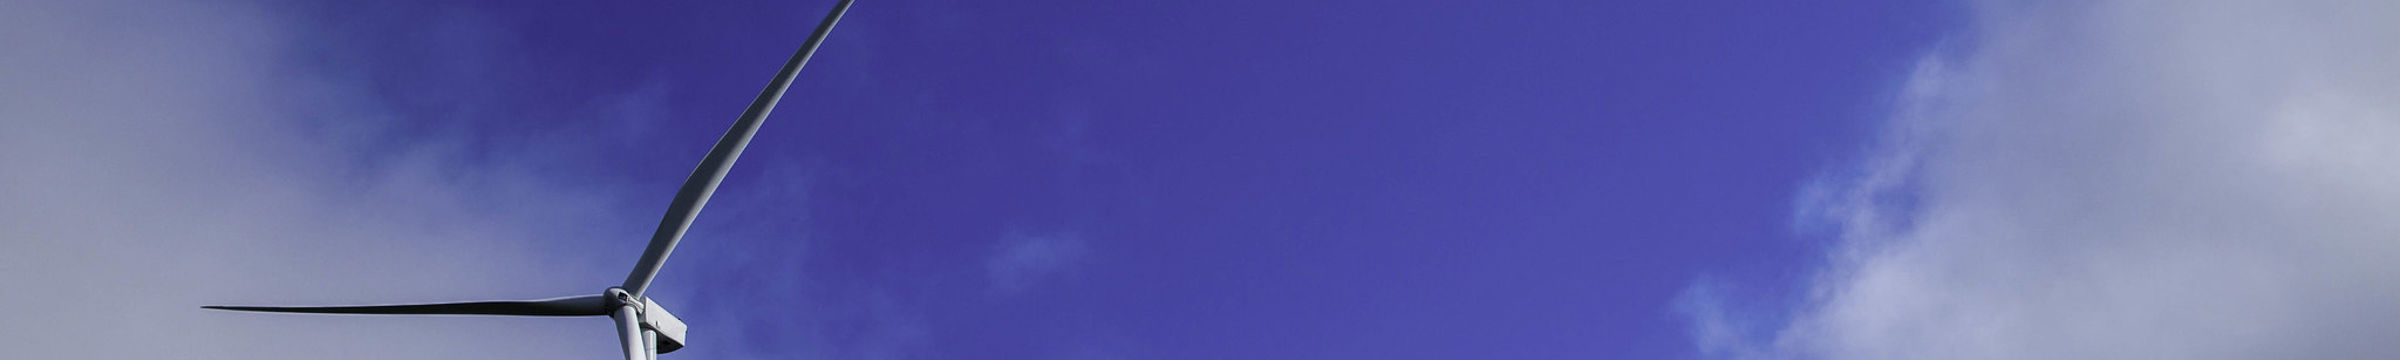 Aerogenerador Statkraft con fondo de cielo azul 